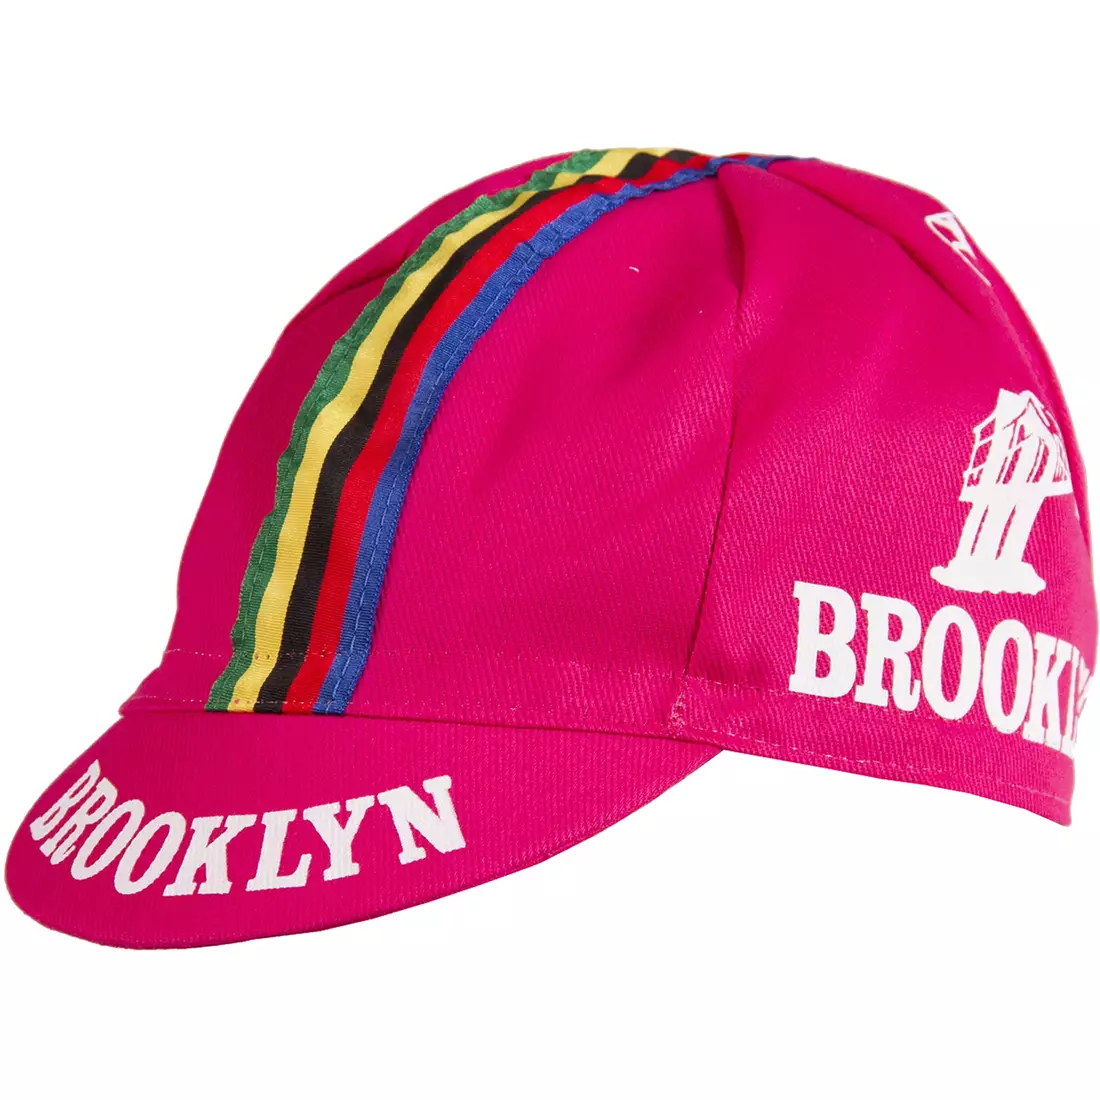 Şapcă de ciclism GIORDANA SS18 - Brooklyn - Roz cu bandă cu dungi GI-S6-COCA-BROK-ROZ mărime unică